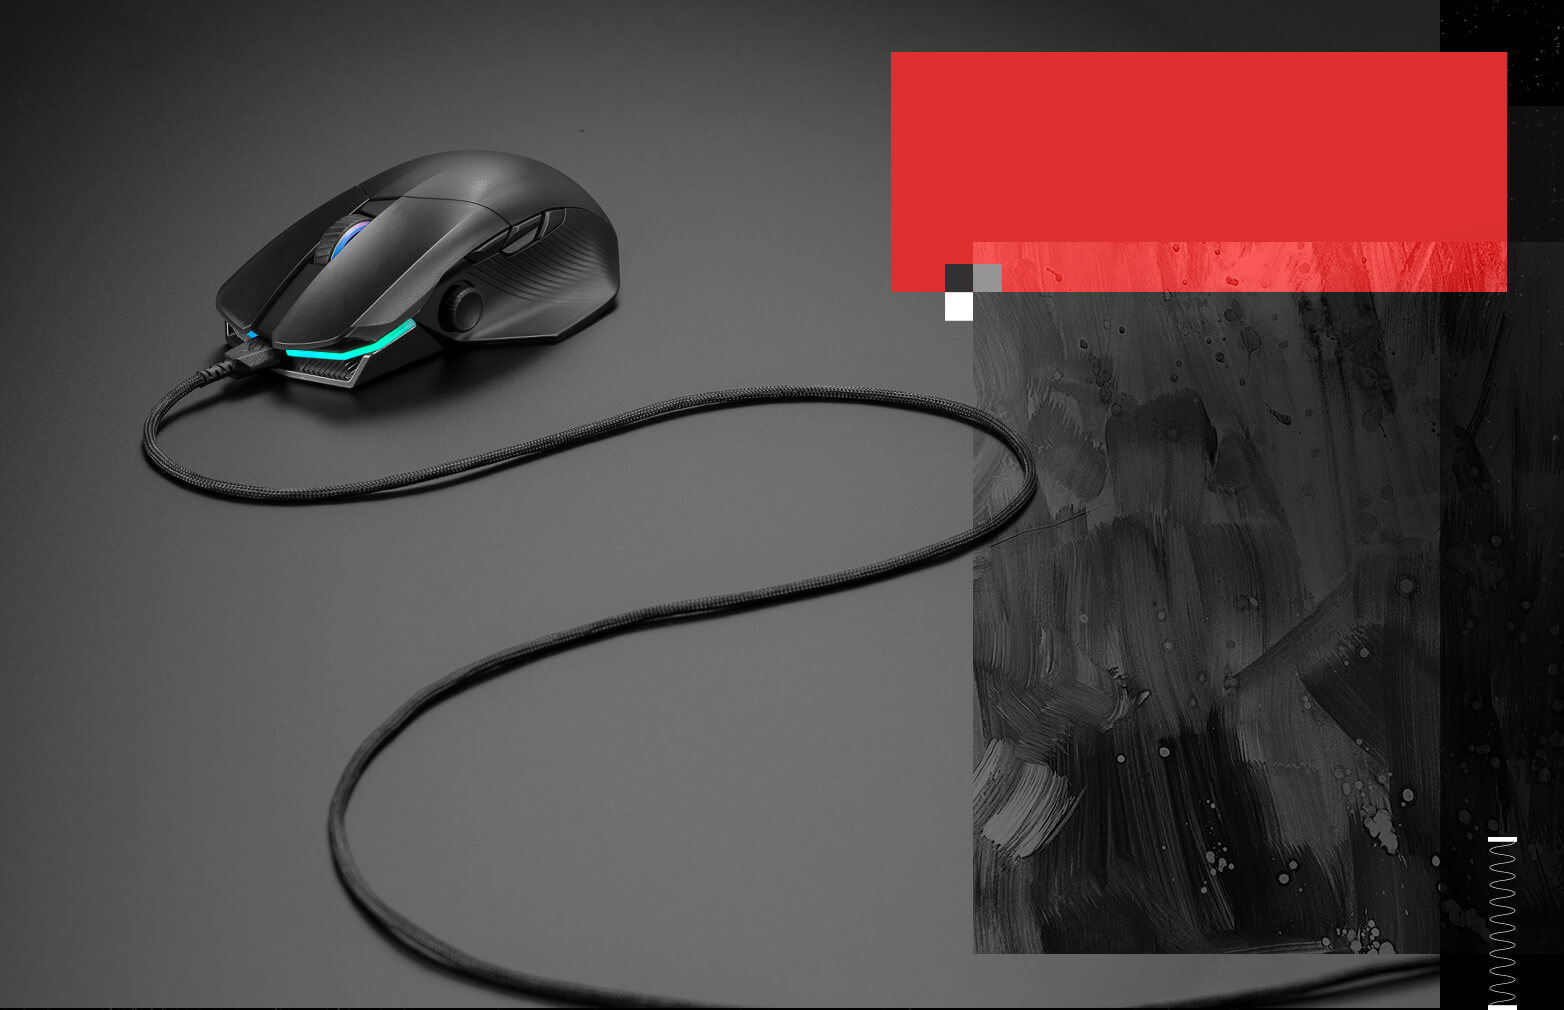 Een foto van de muis in bekabelde modus met z'n flexibele kabel.